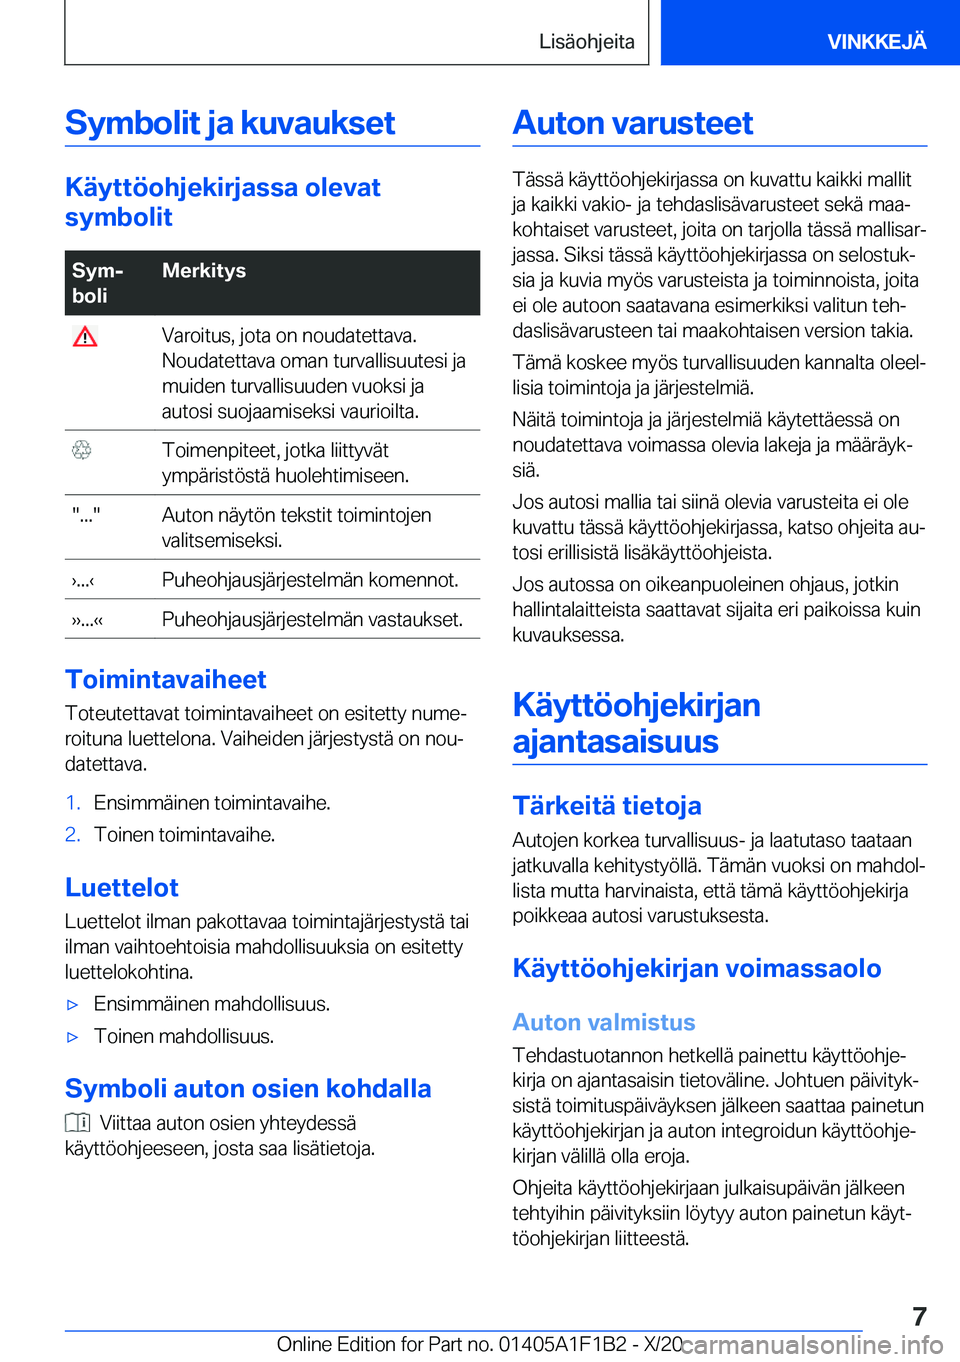 BMW M5 2021  Omistajan Käsikirja (in Finnish) �S�y�m�b�o�l�i�t��j�a��k�u�v�a�u�k�s�e�t
�K�